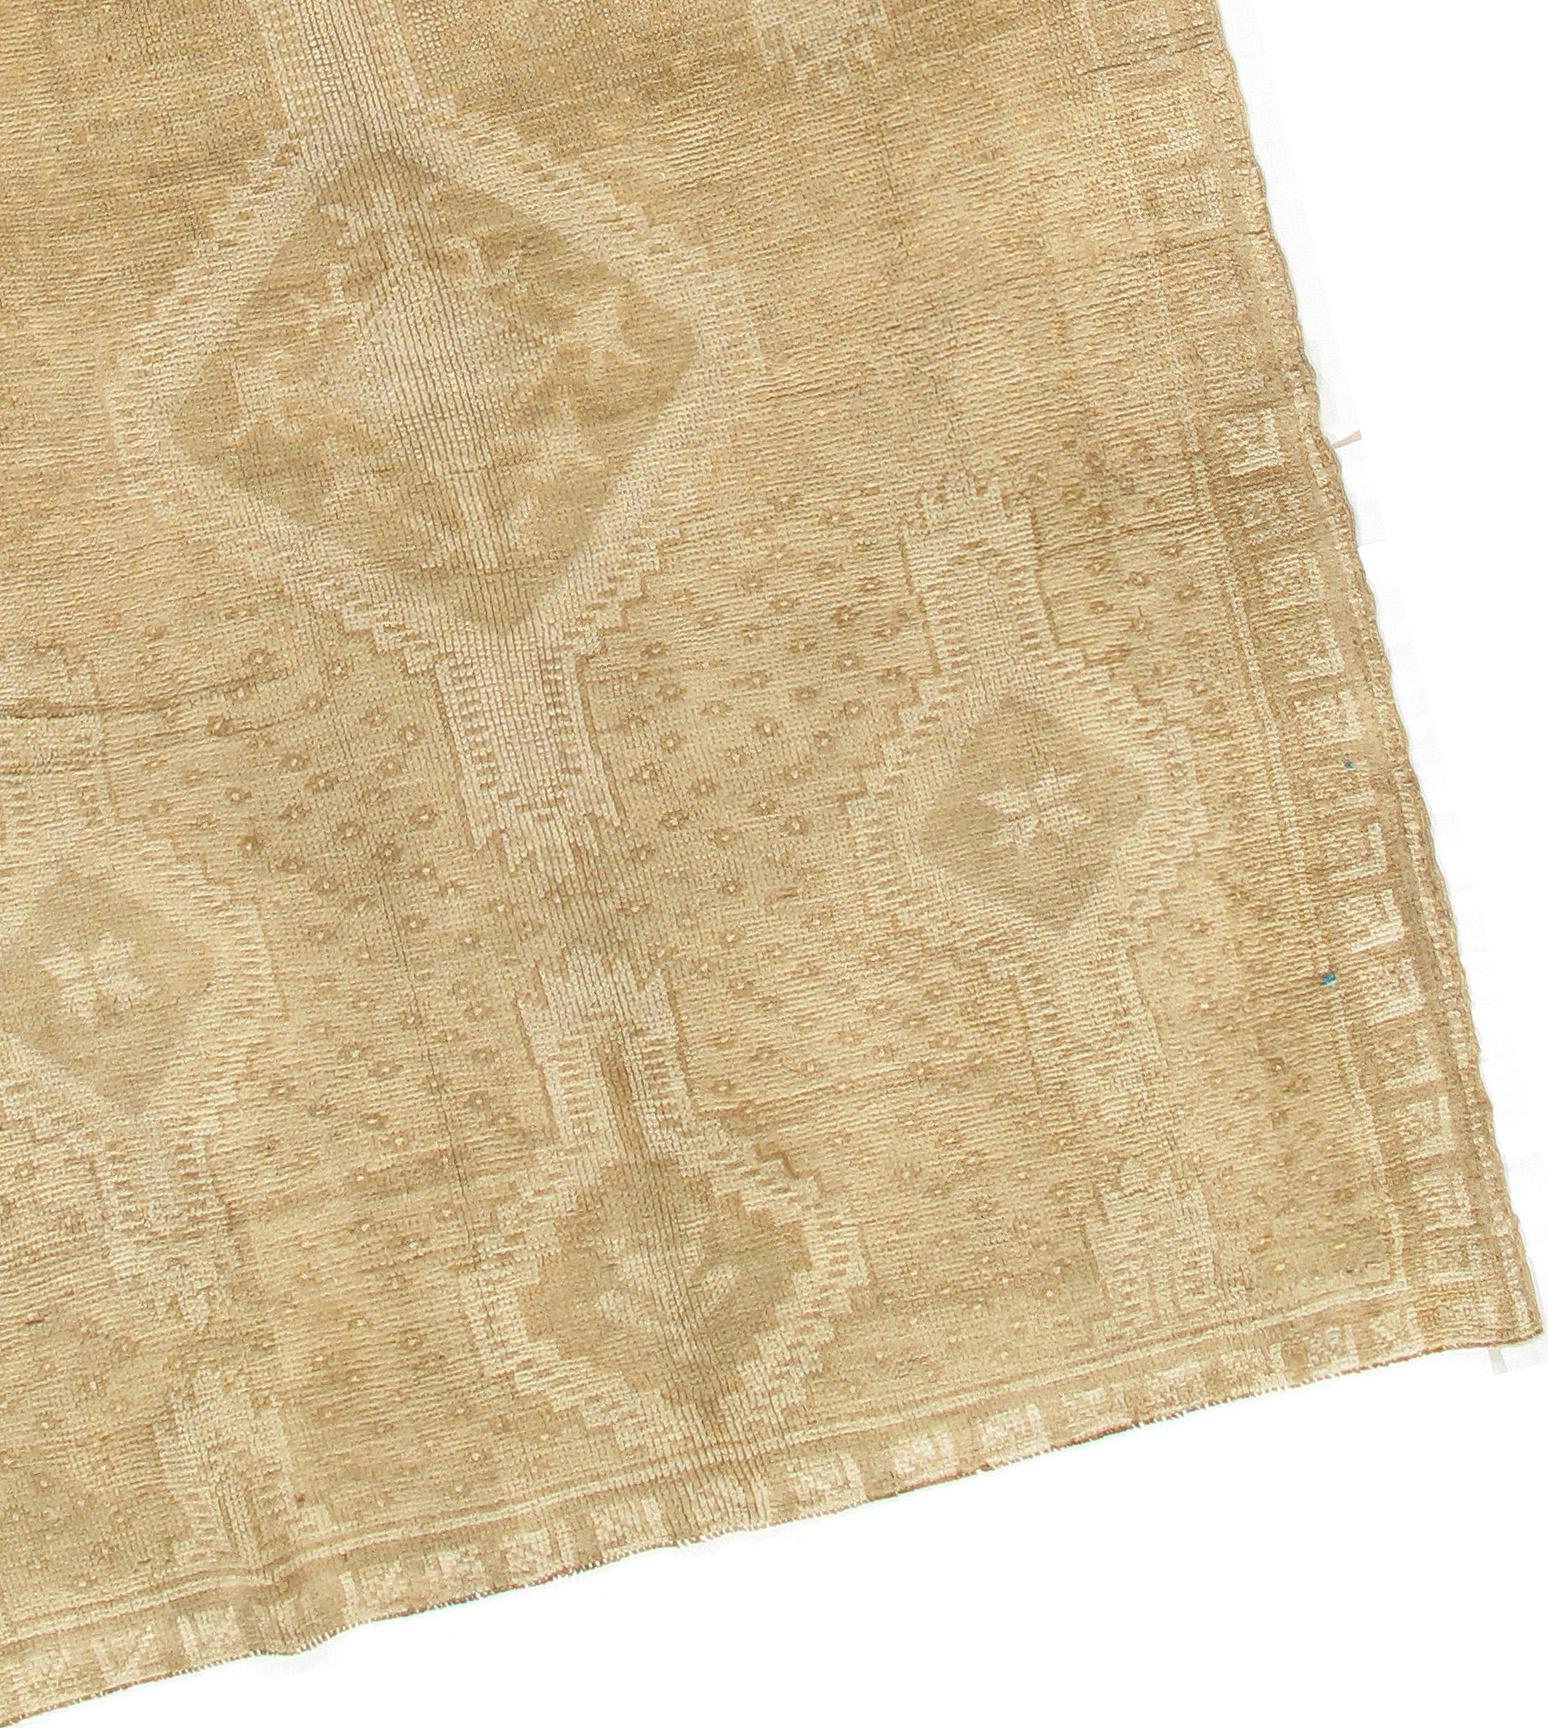 Vieux tapis turc Oushak Gallery. Vintage circa 1950's Caractère, tradition, motif et palette convergent dans ce magnifique tapis turc Oushak vintage noué à la main aux couleurs douces. Le tapis a subi un lavage doux pour atténuer les couleurs.